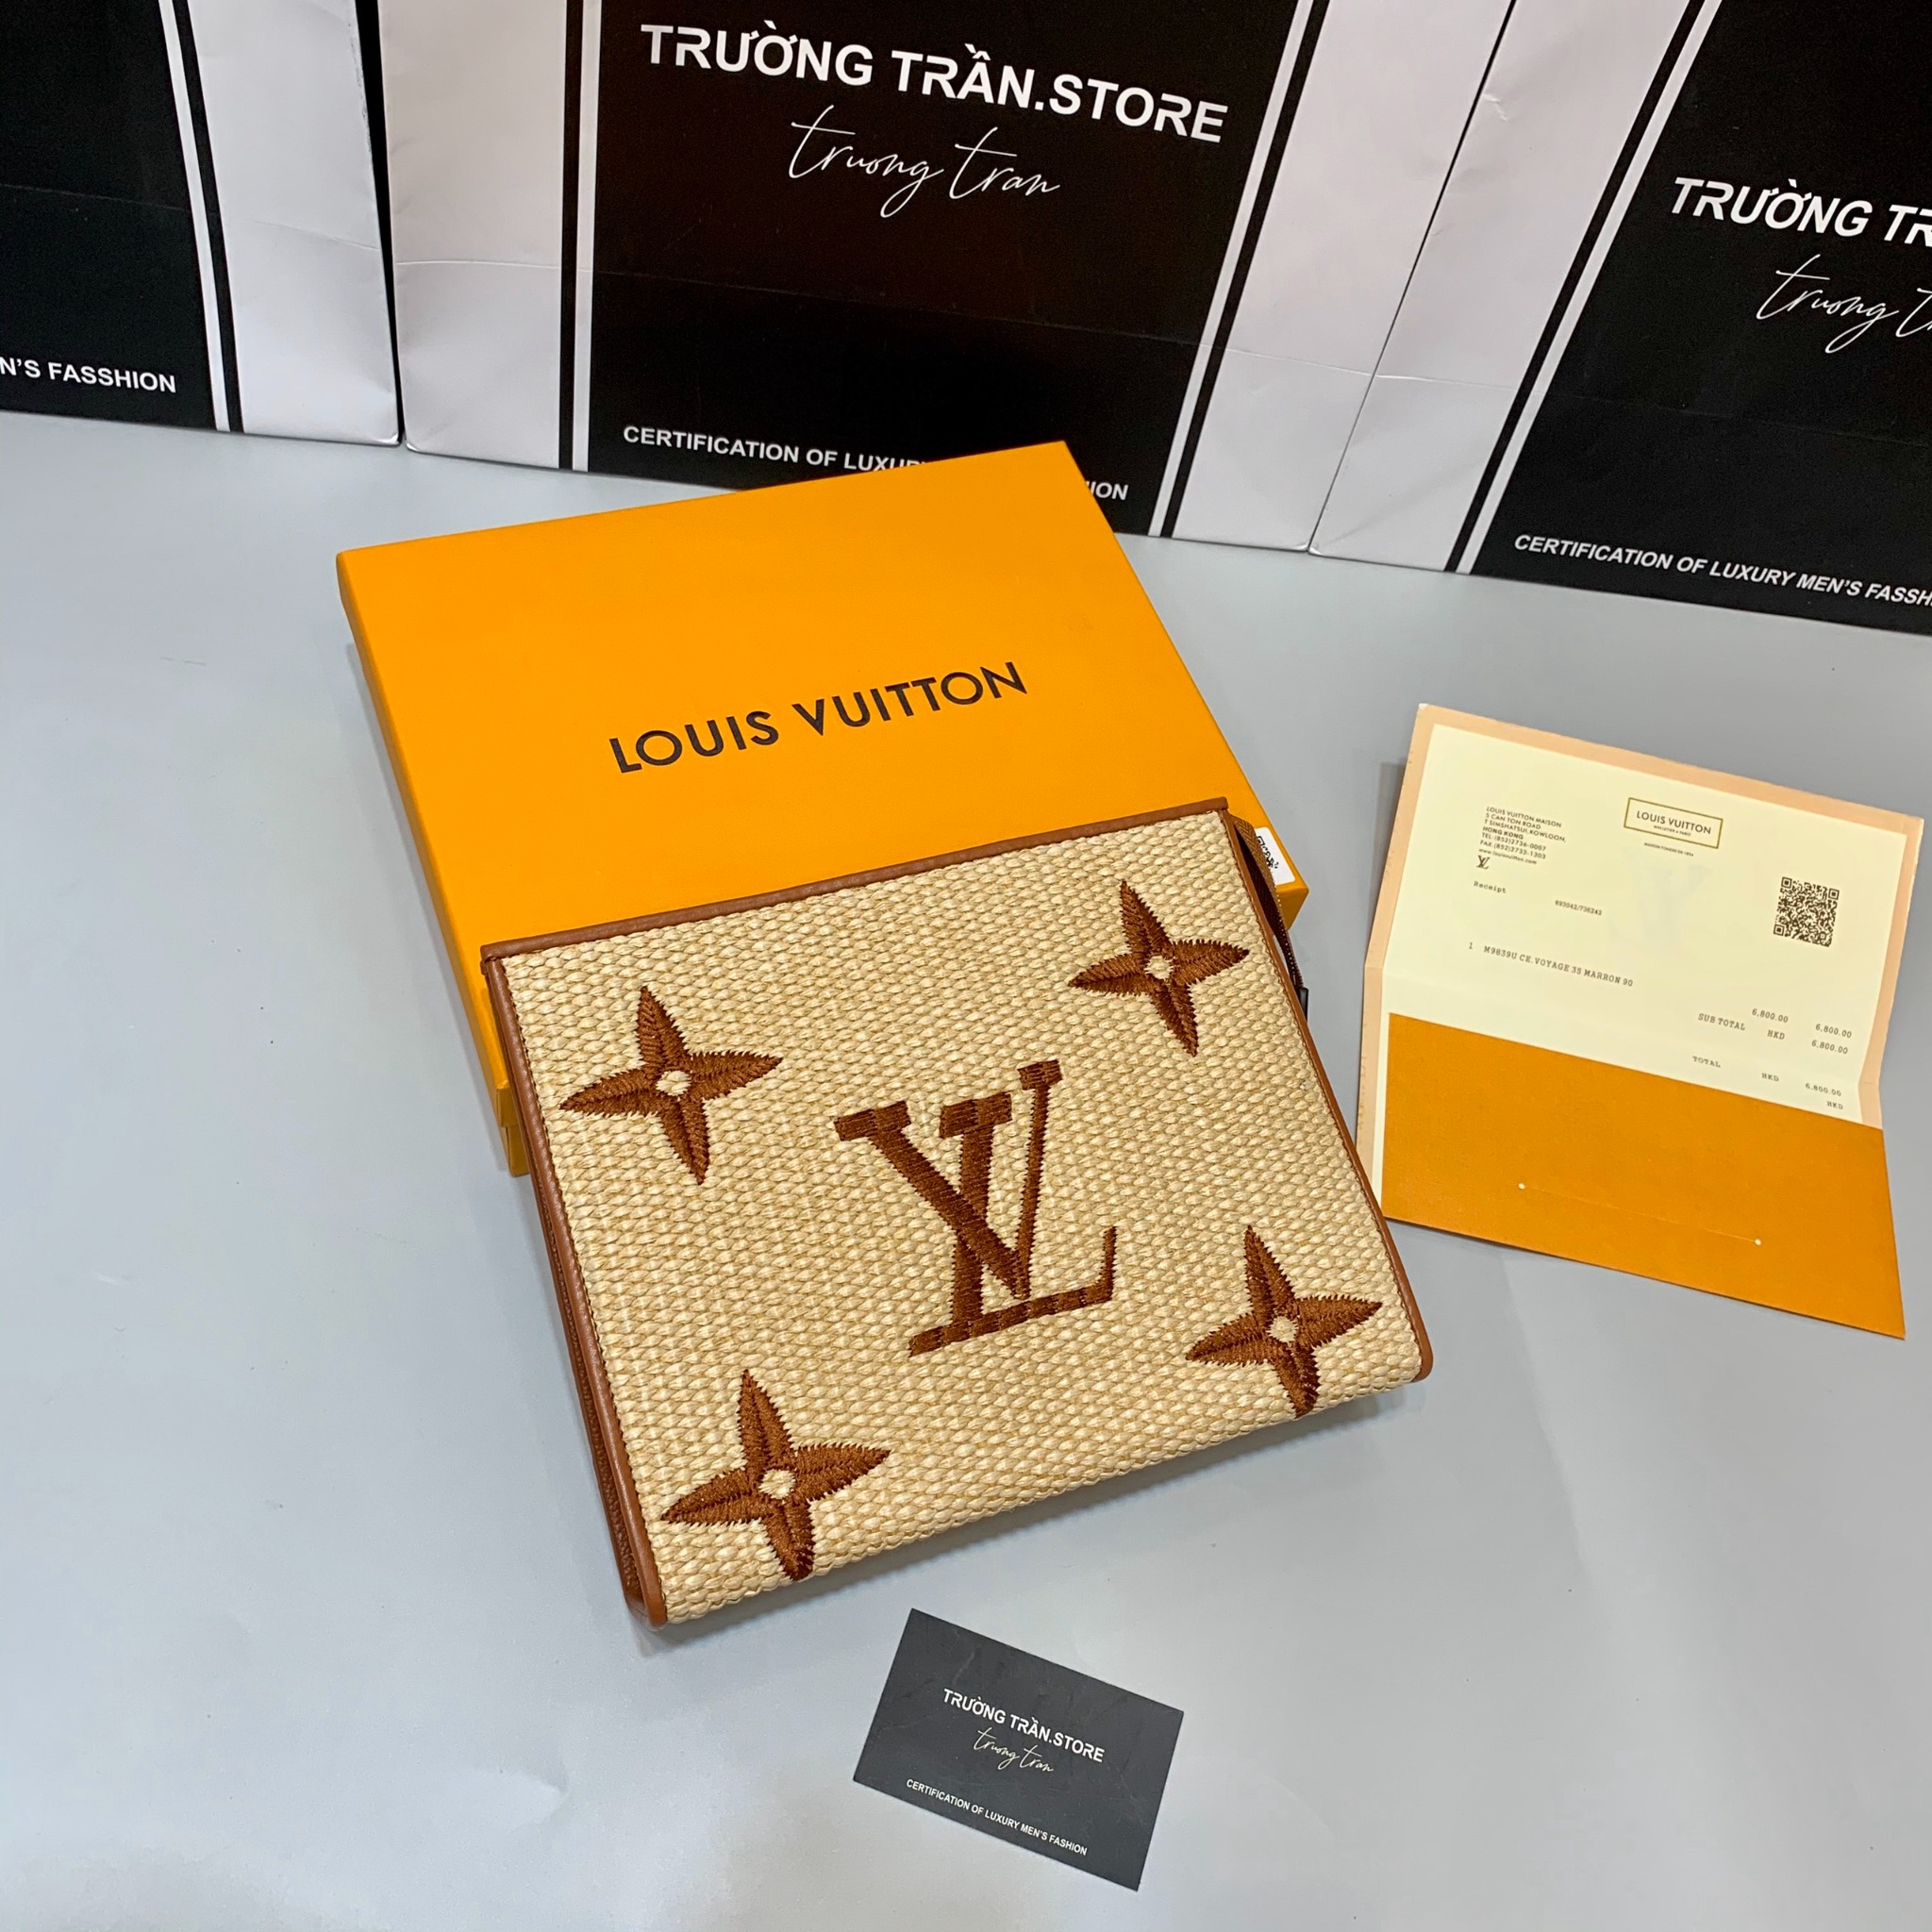 Clutch - Ví Cầm Tay Louis Vuitton - Nam - CLTT126 – Trường Trần. Store